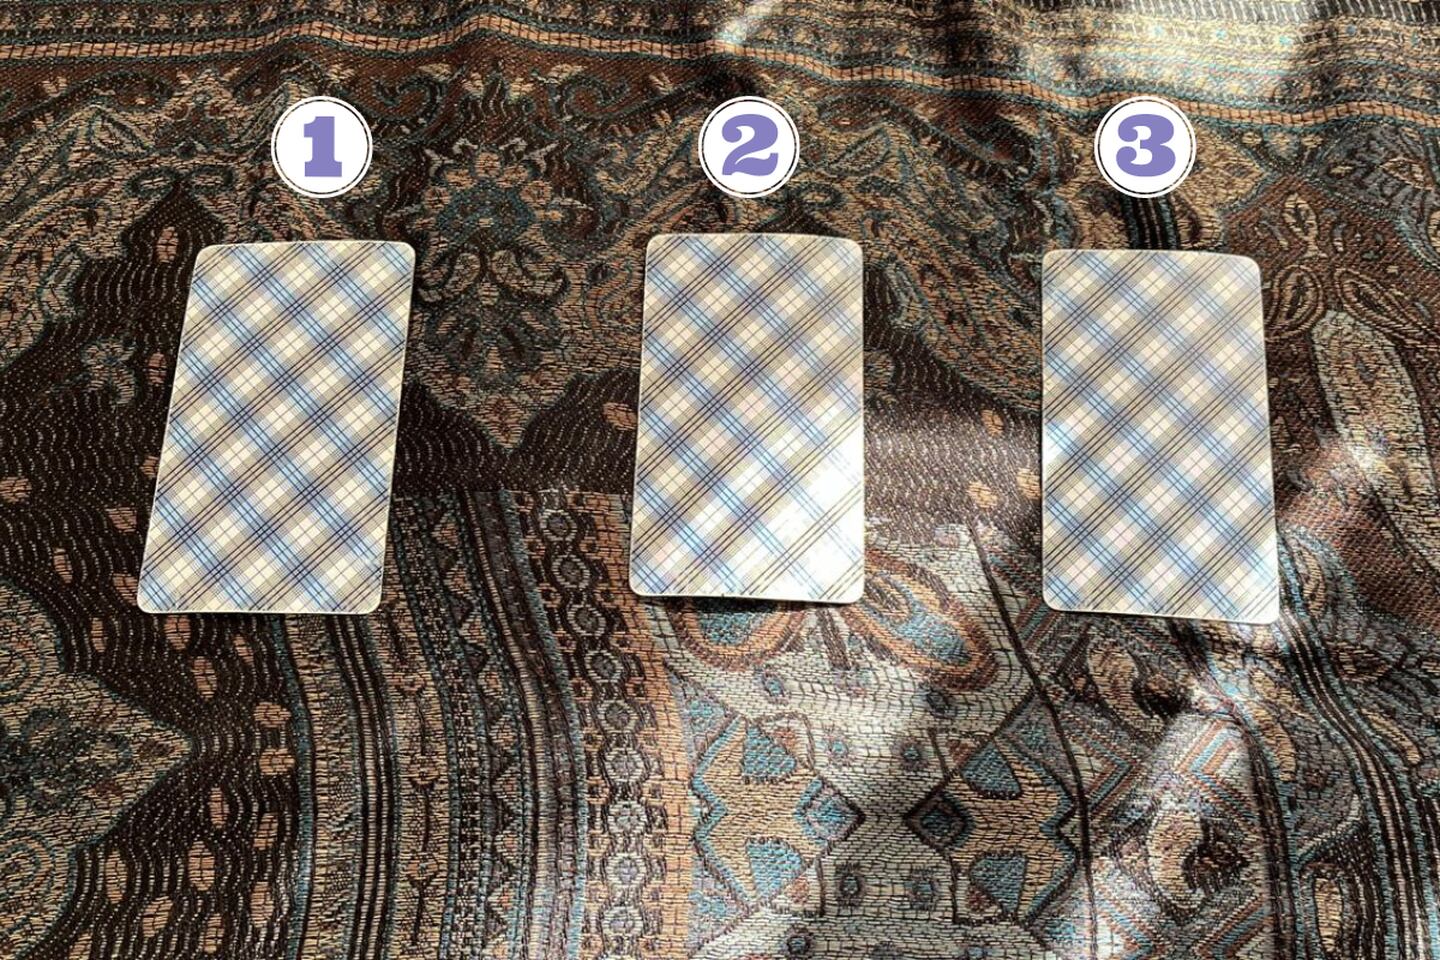 tres cartas del tarot al revés encima de una tela.